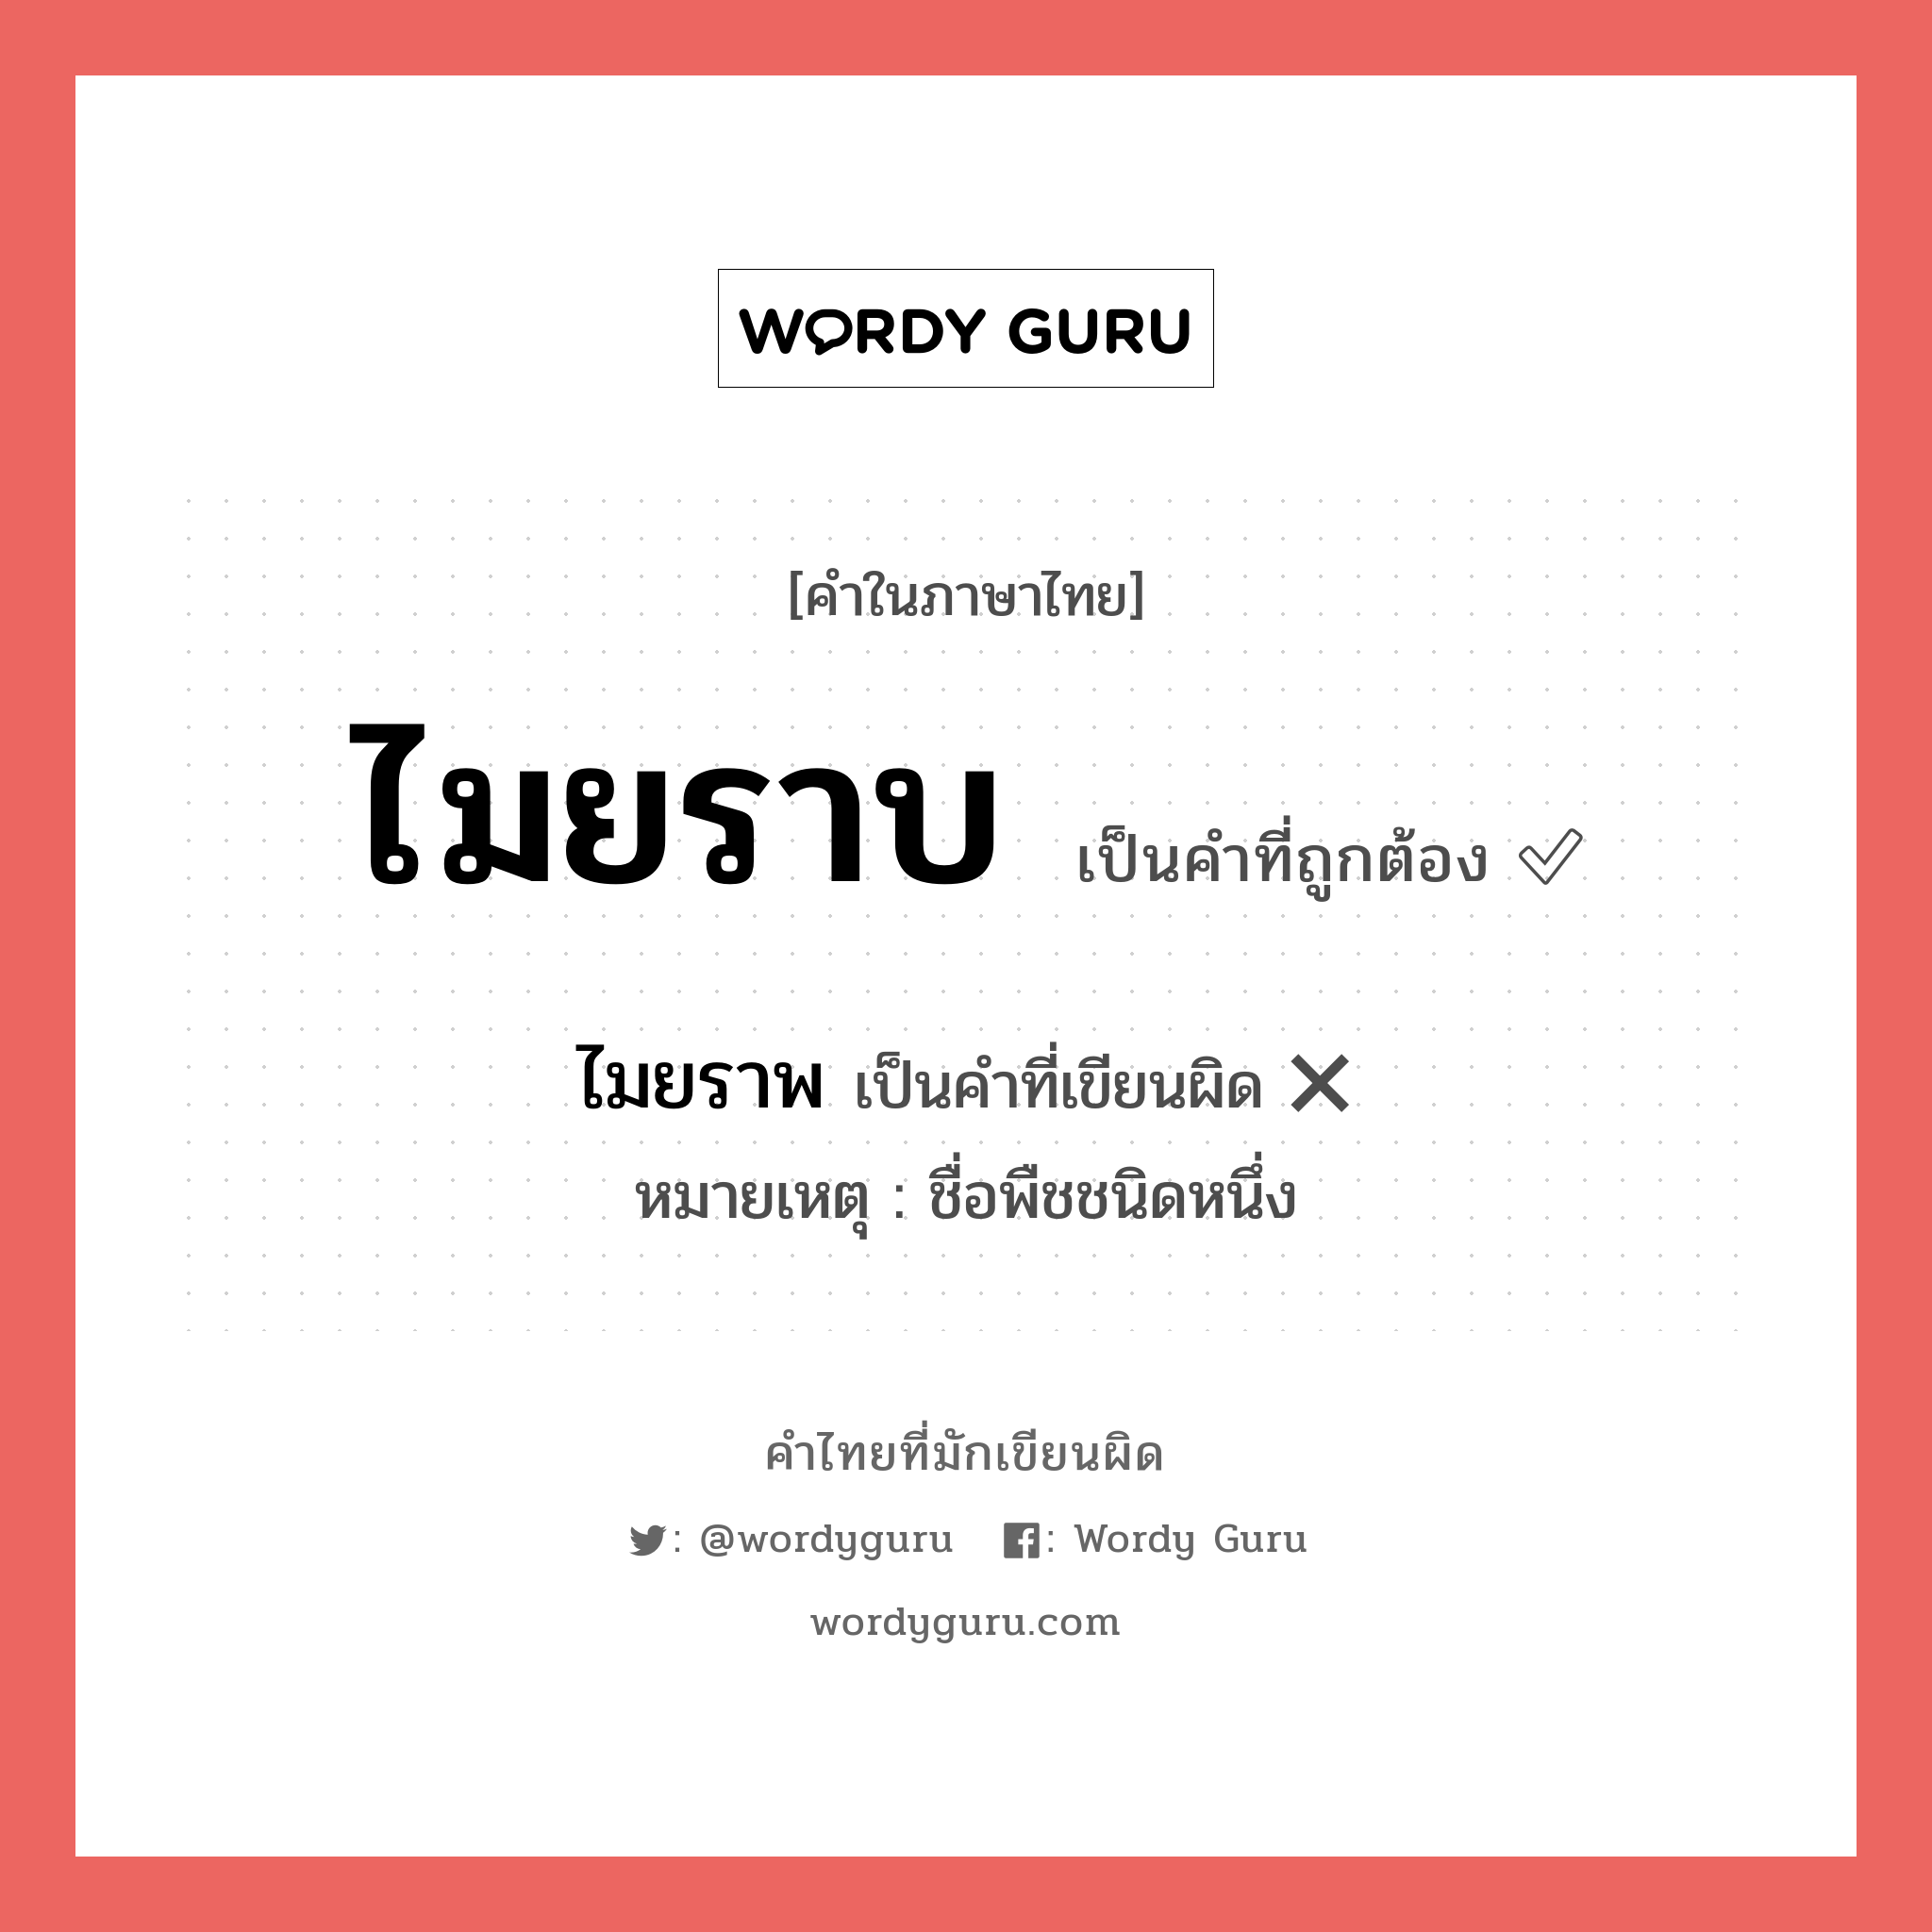 ไมยราบ หรือ ไมยราพ คำไหนเขียนถูก?, คำในภาษาไทยที่มักเขียนผิด ไมยราบ คำที่ผิด ❌ ไมยราพ หมายเหตุ ชื่อพืชชนิดหนึ่ง